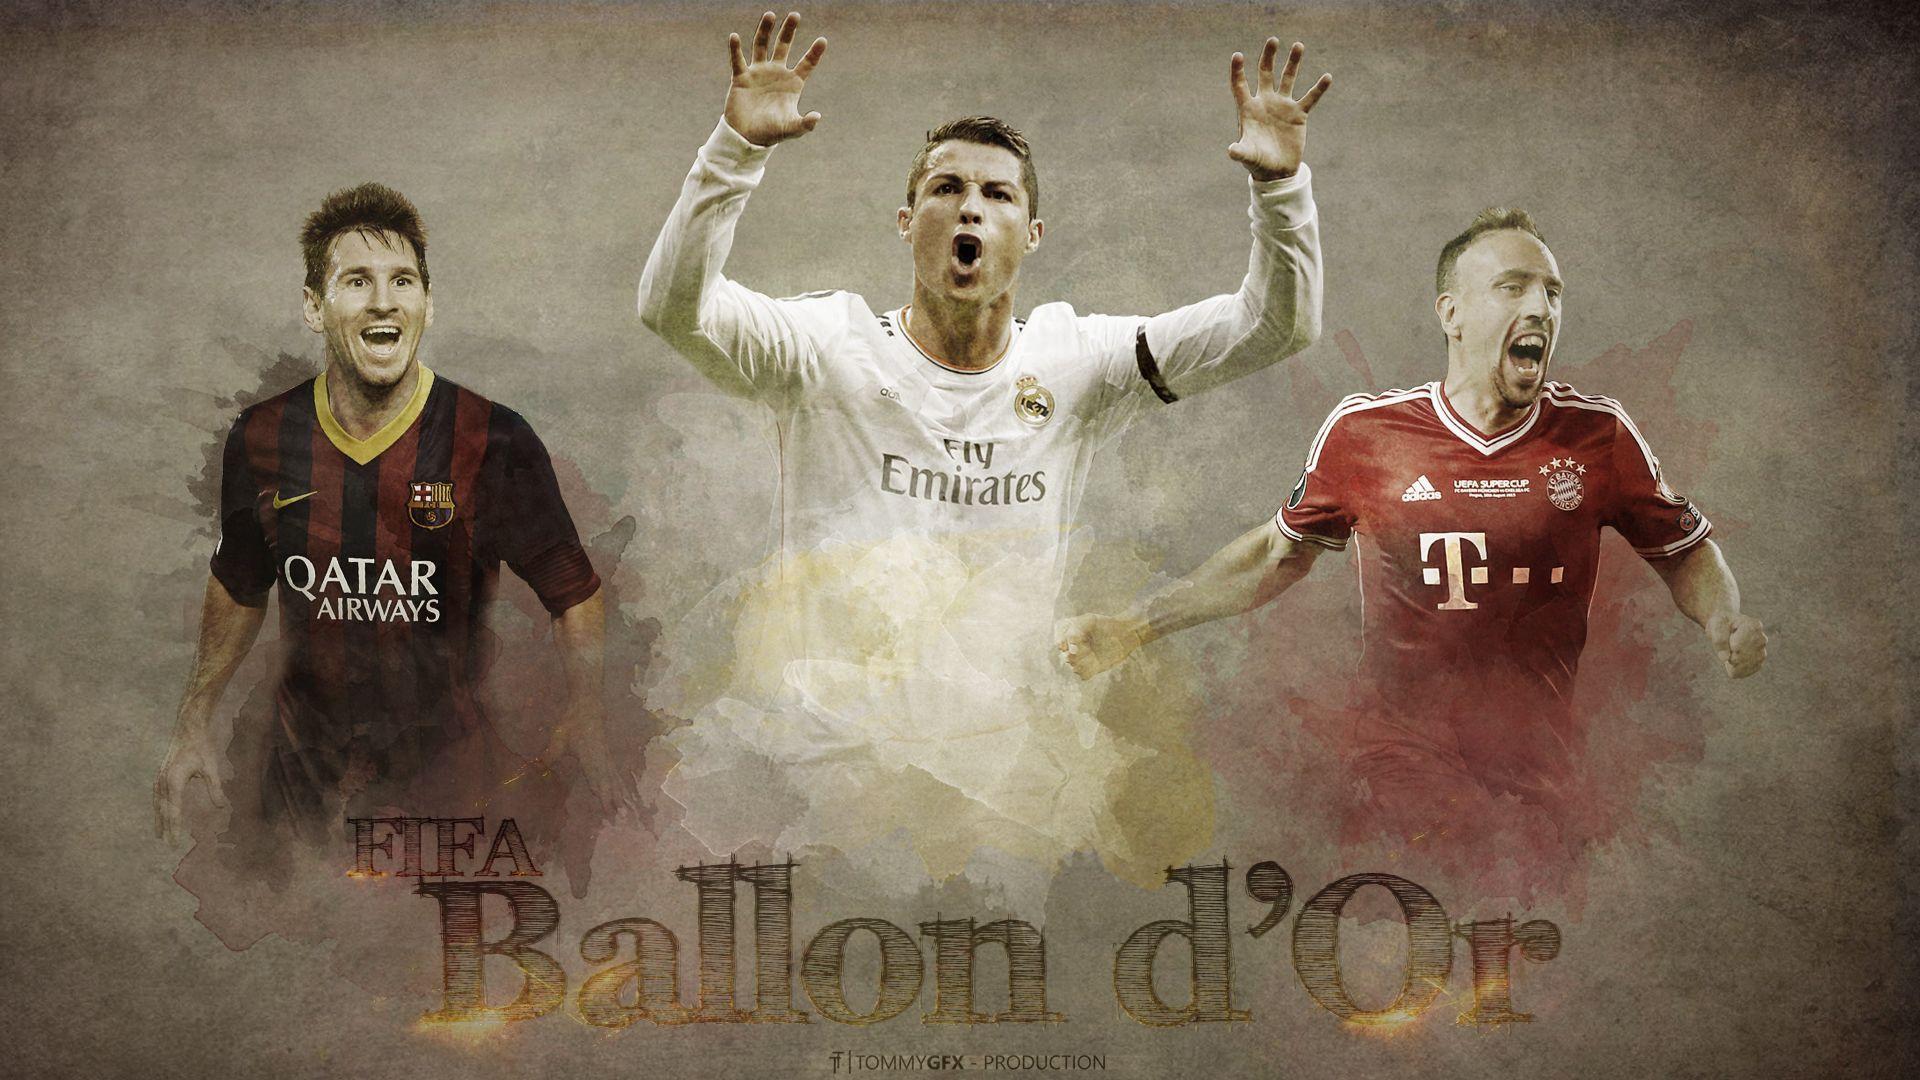 Fifa Ballon d'Or. HD Football Wallpaper